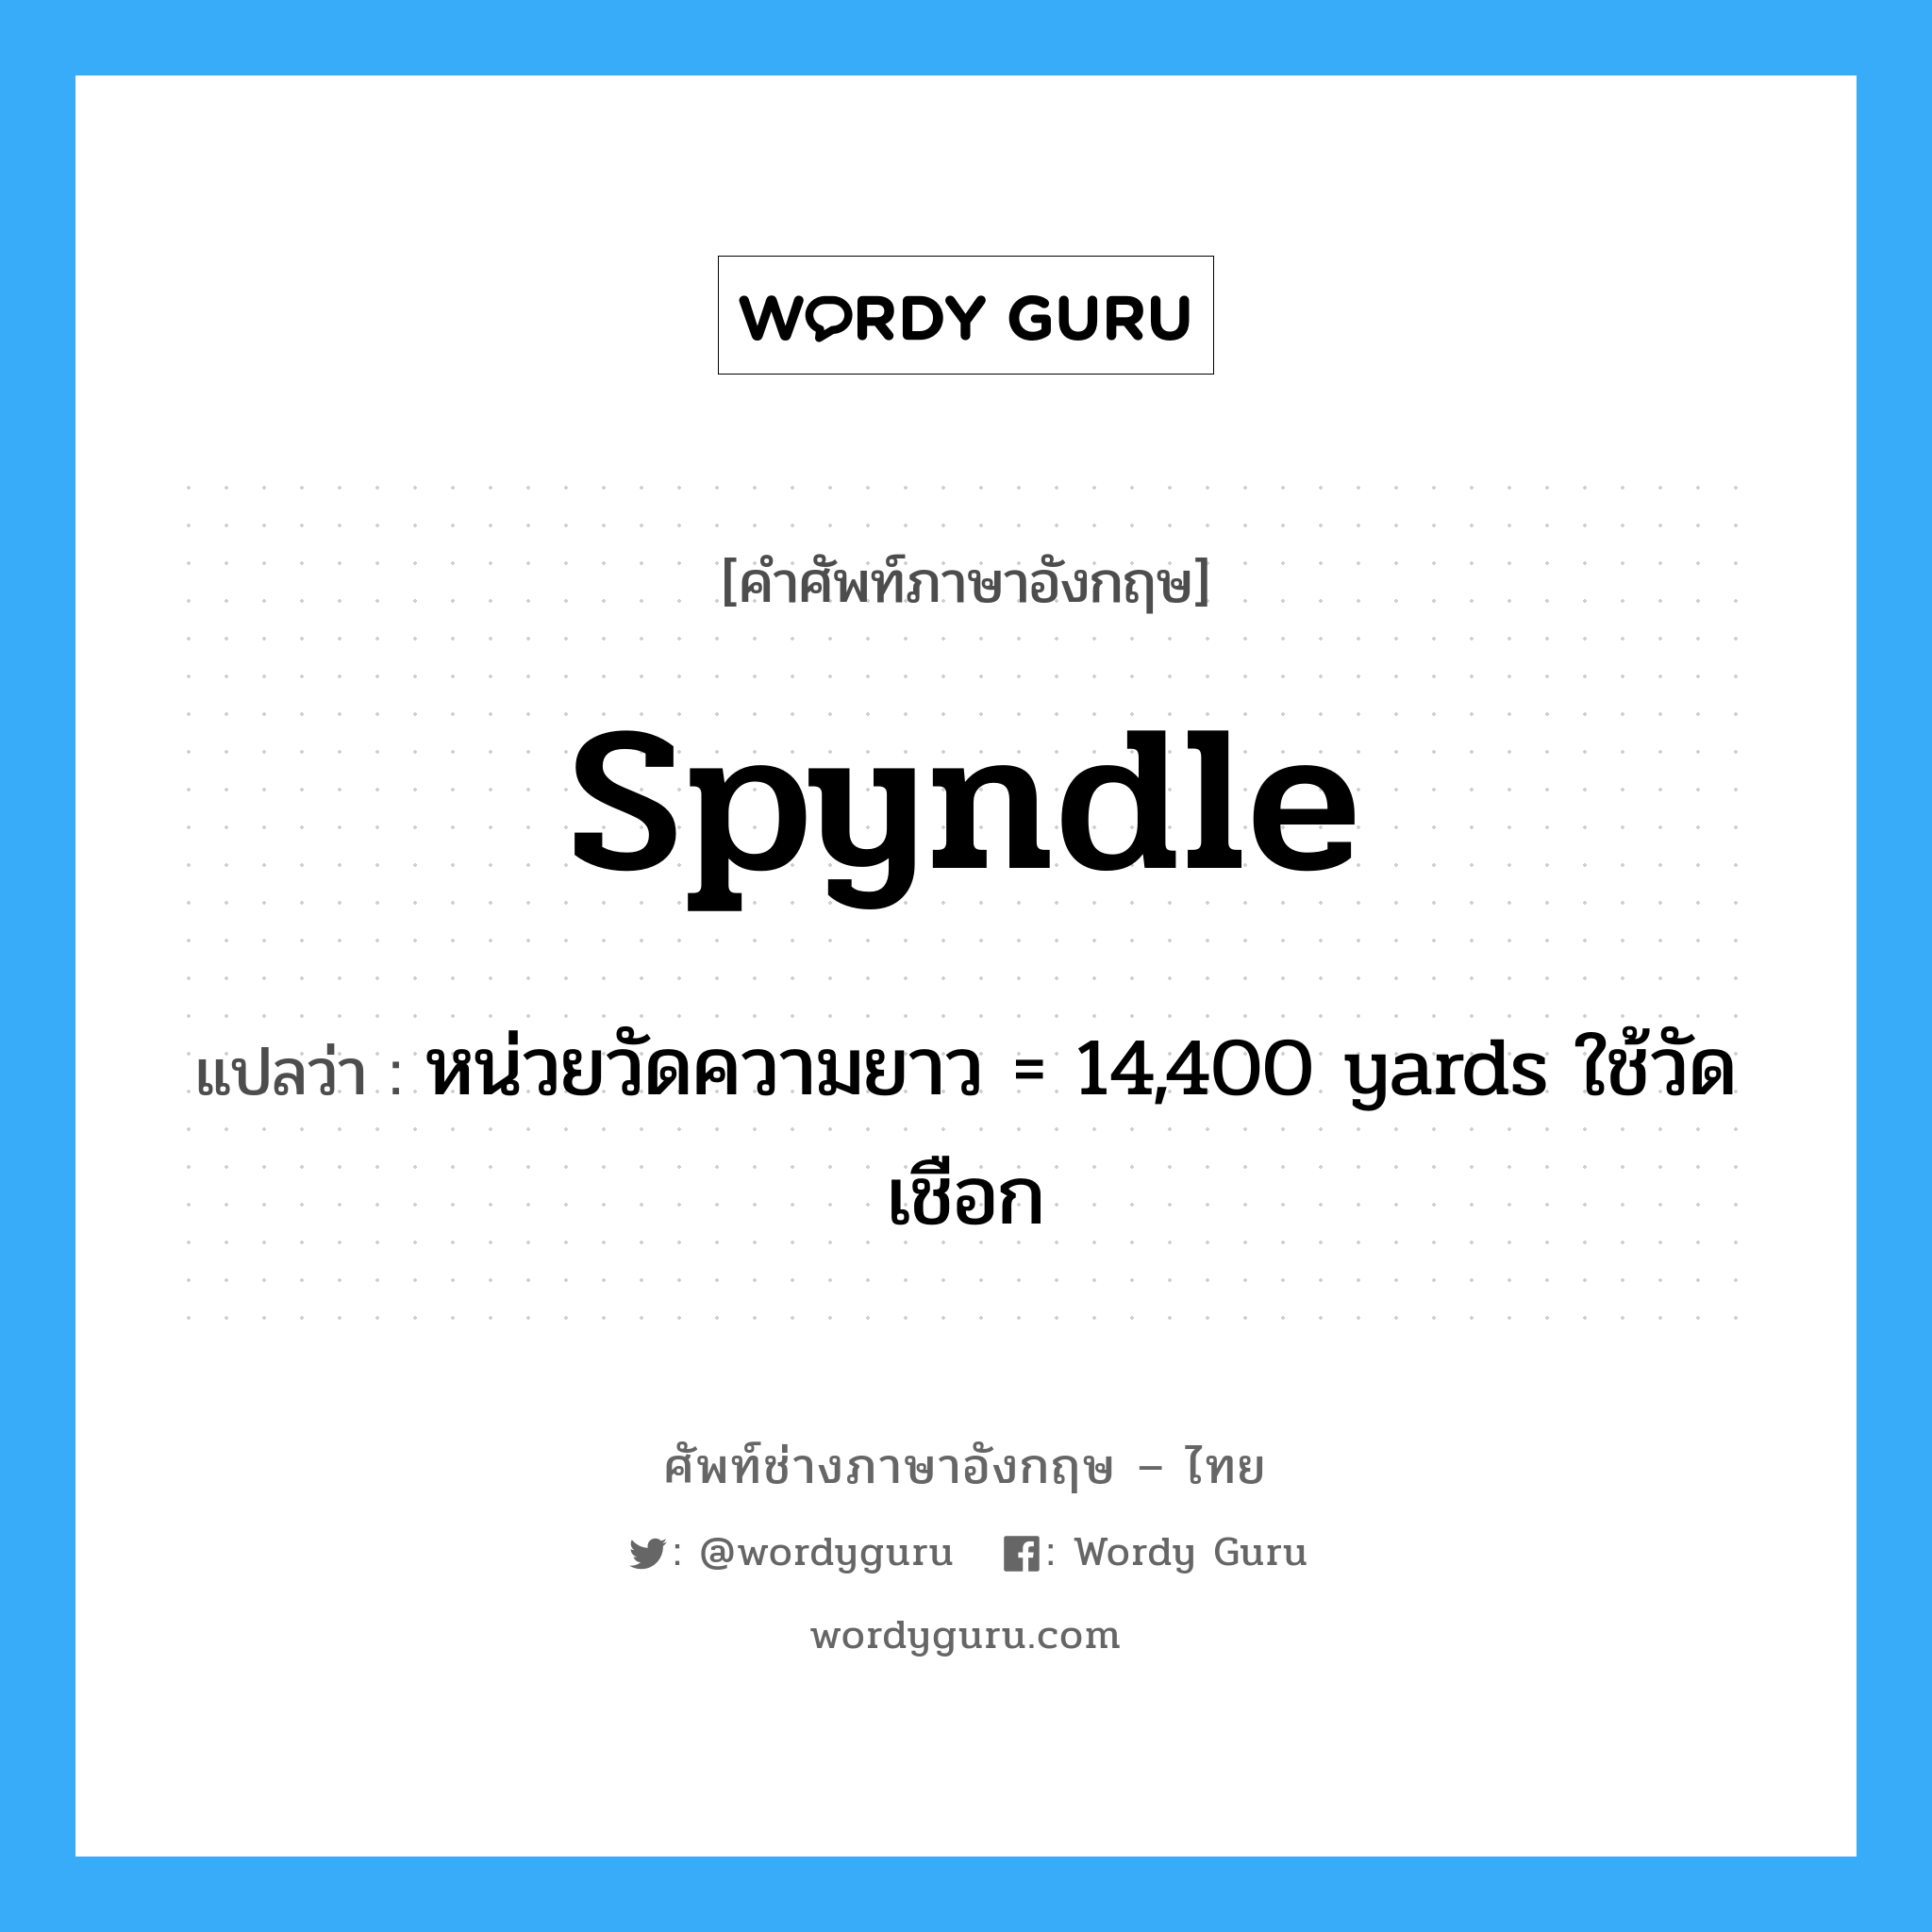 หน่วยวัดความยาว = 14,400 yards ใช้วัดเชือก ภาษาอังกฤษ?, คำศัพท์ช่างภาษาอังกฤษ - ไทย หน่วยวัดความยาว = 14,400 yards ใช้วัดเชือก คำศัพท์ภาษาอังกฤษ หน่วยวัดความยาว = 14,400 yards ใช้วัดเชือก แปลว่า spyndle